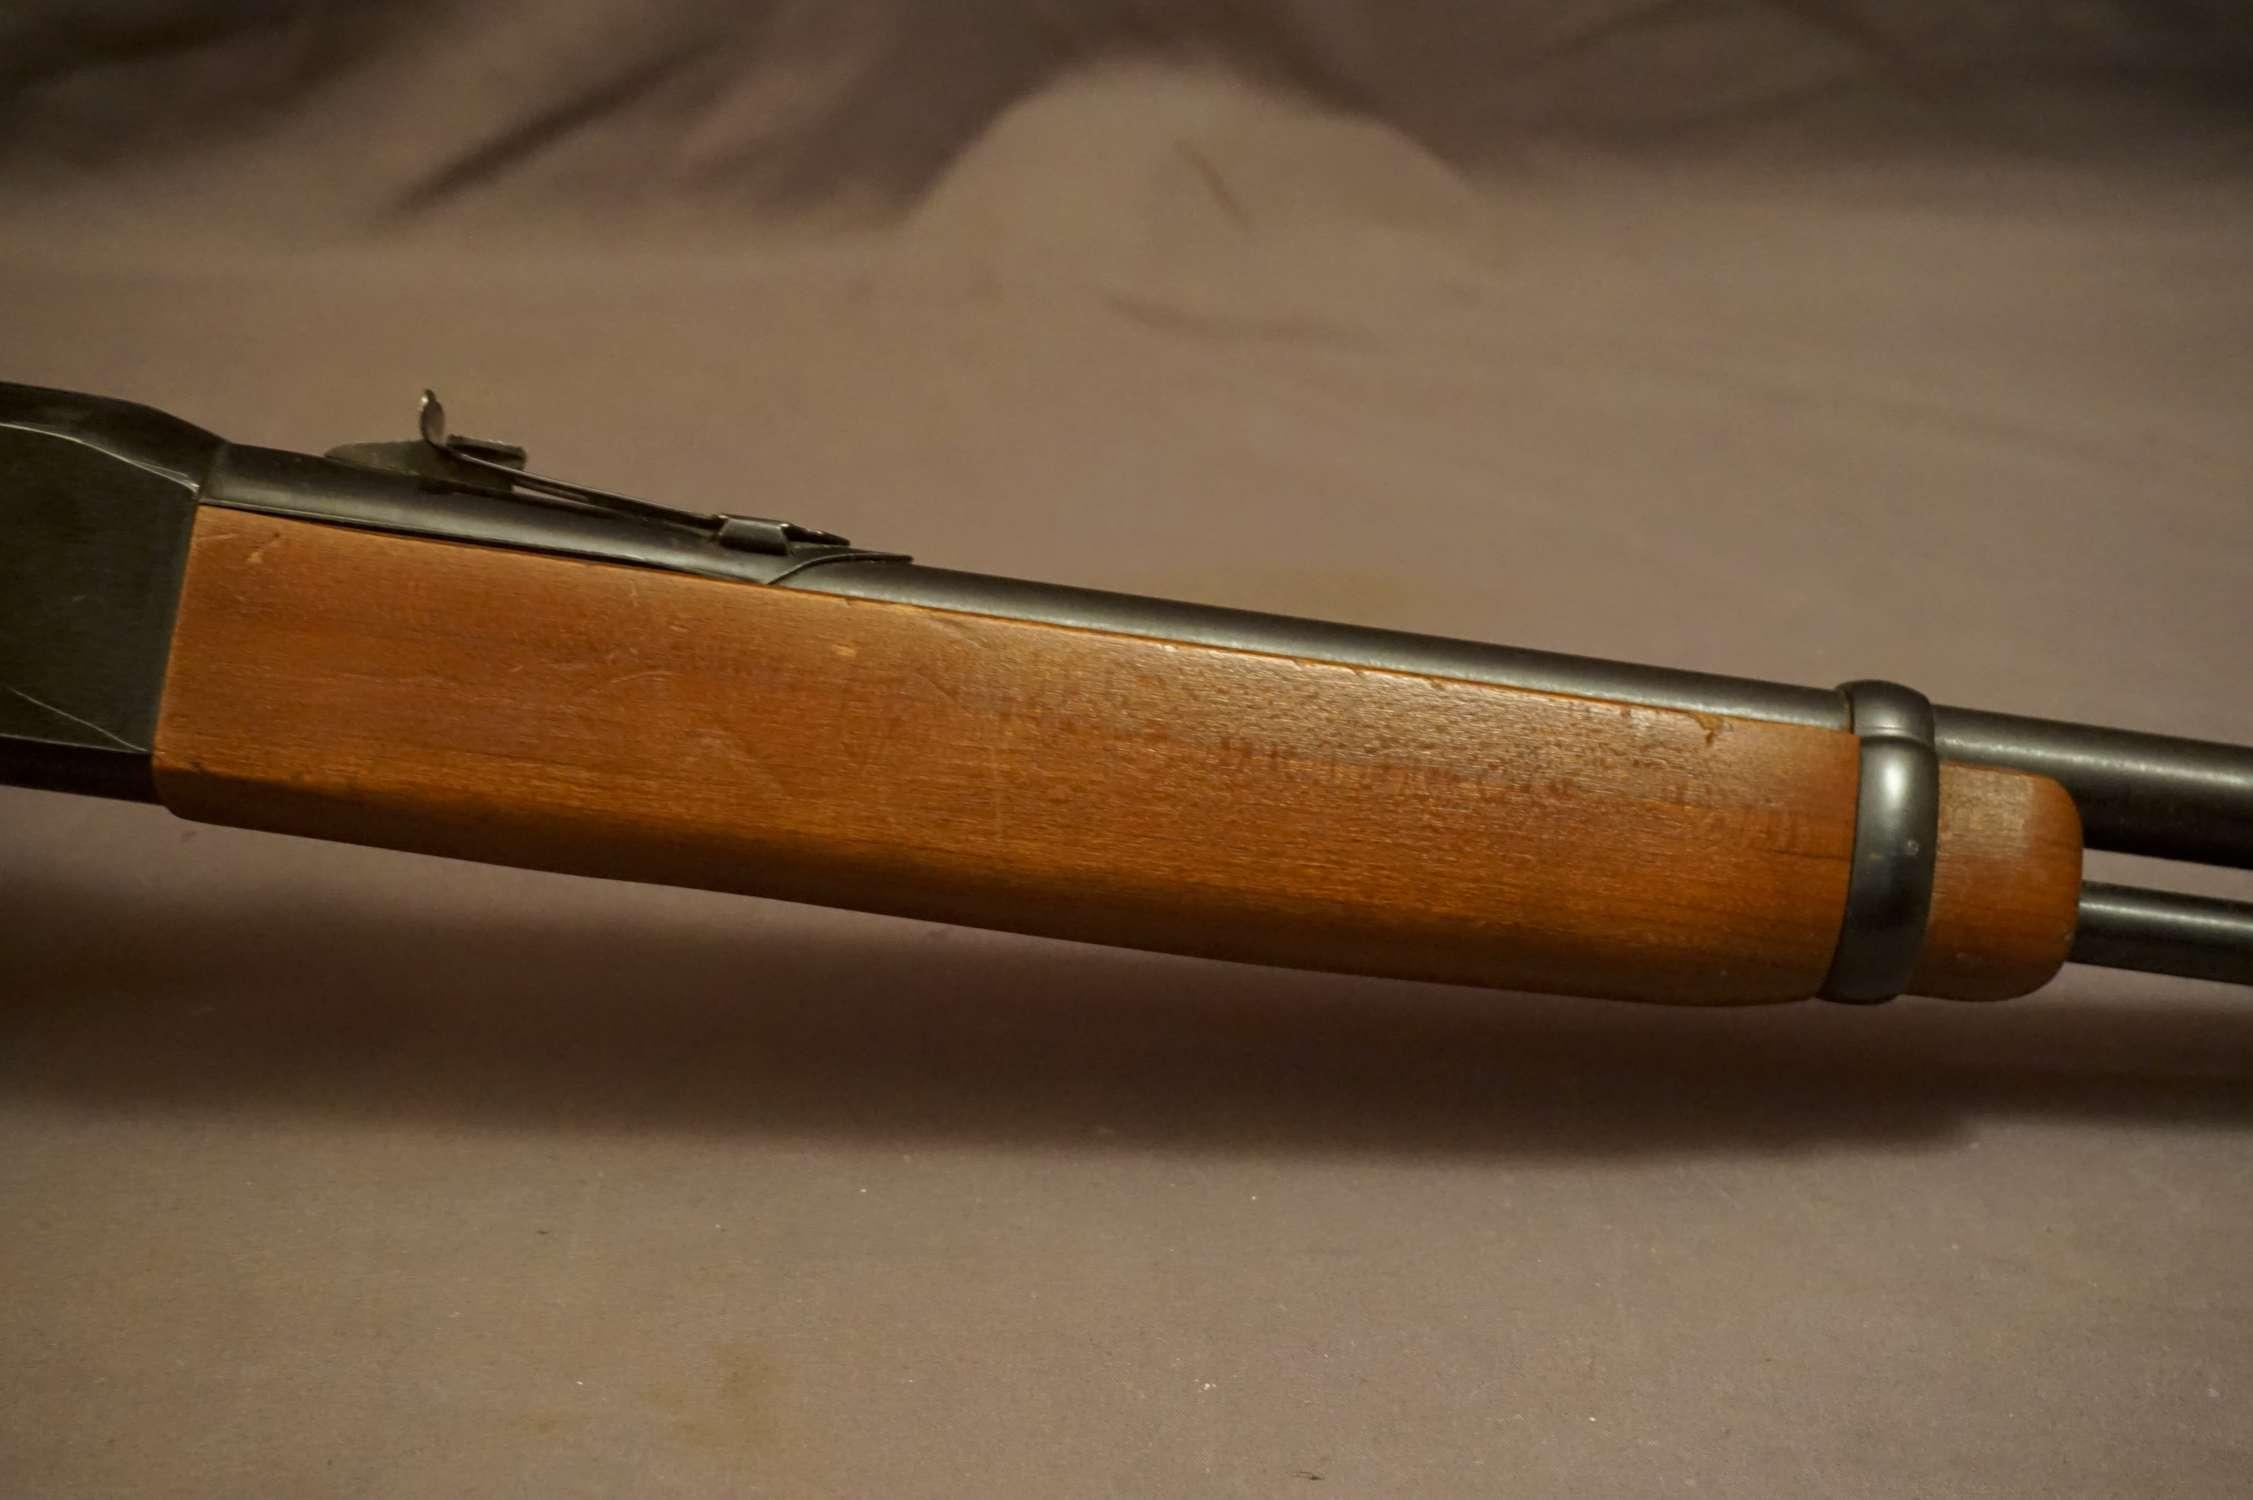 Winchester M. 150 .22 L/A Rifle